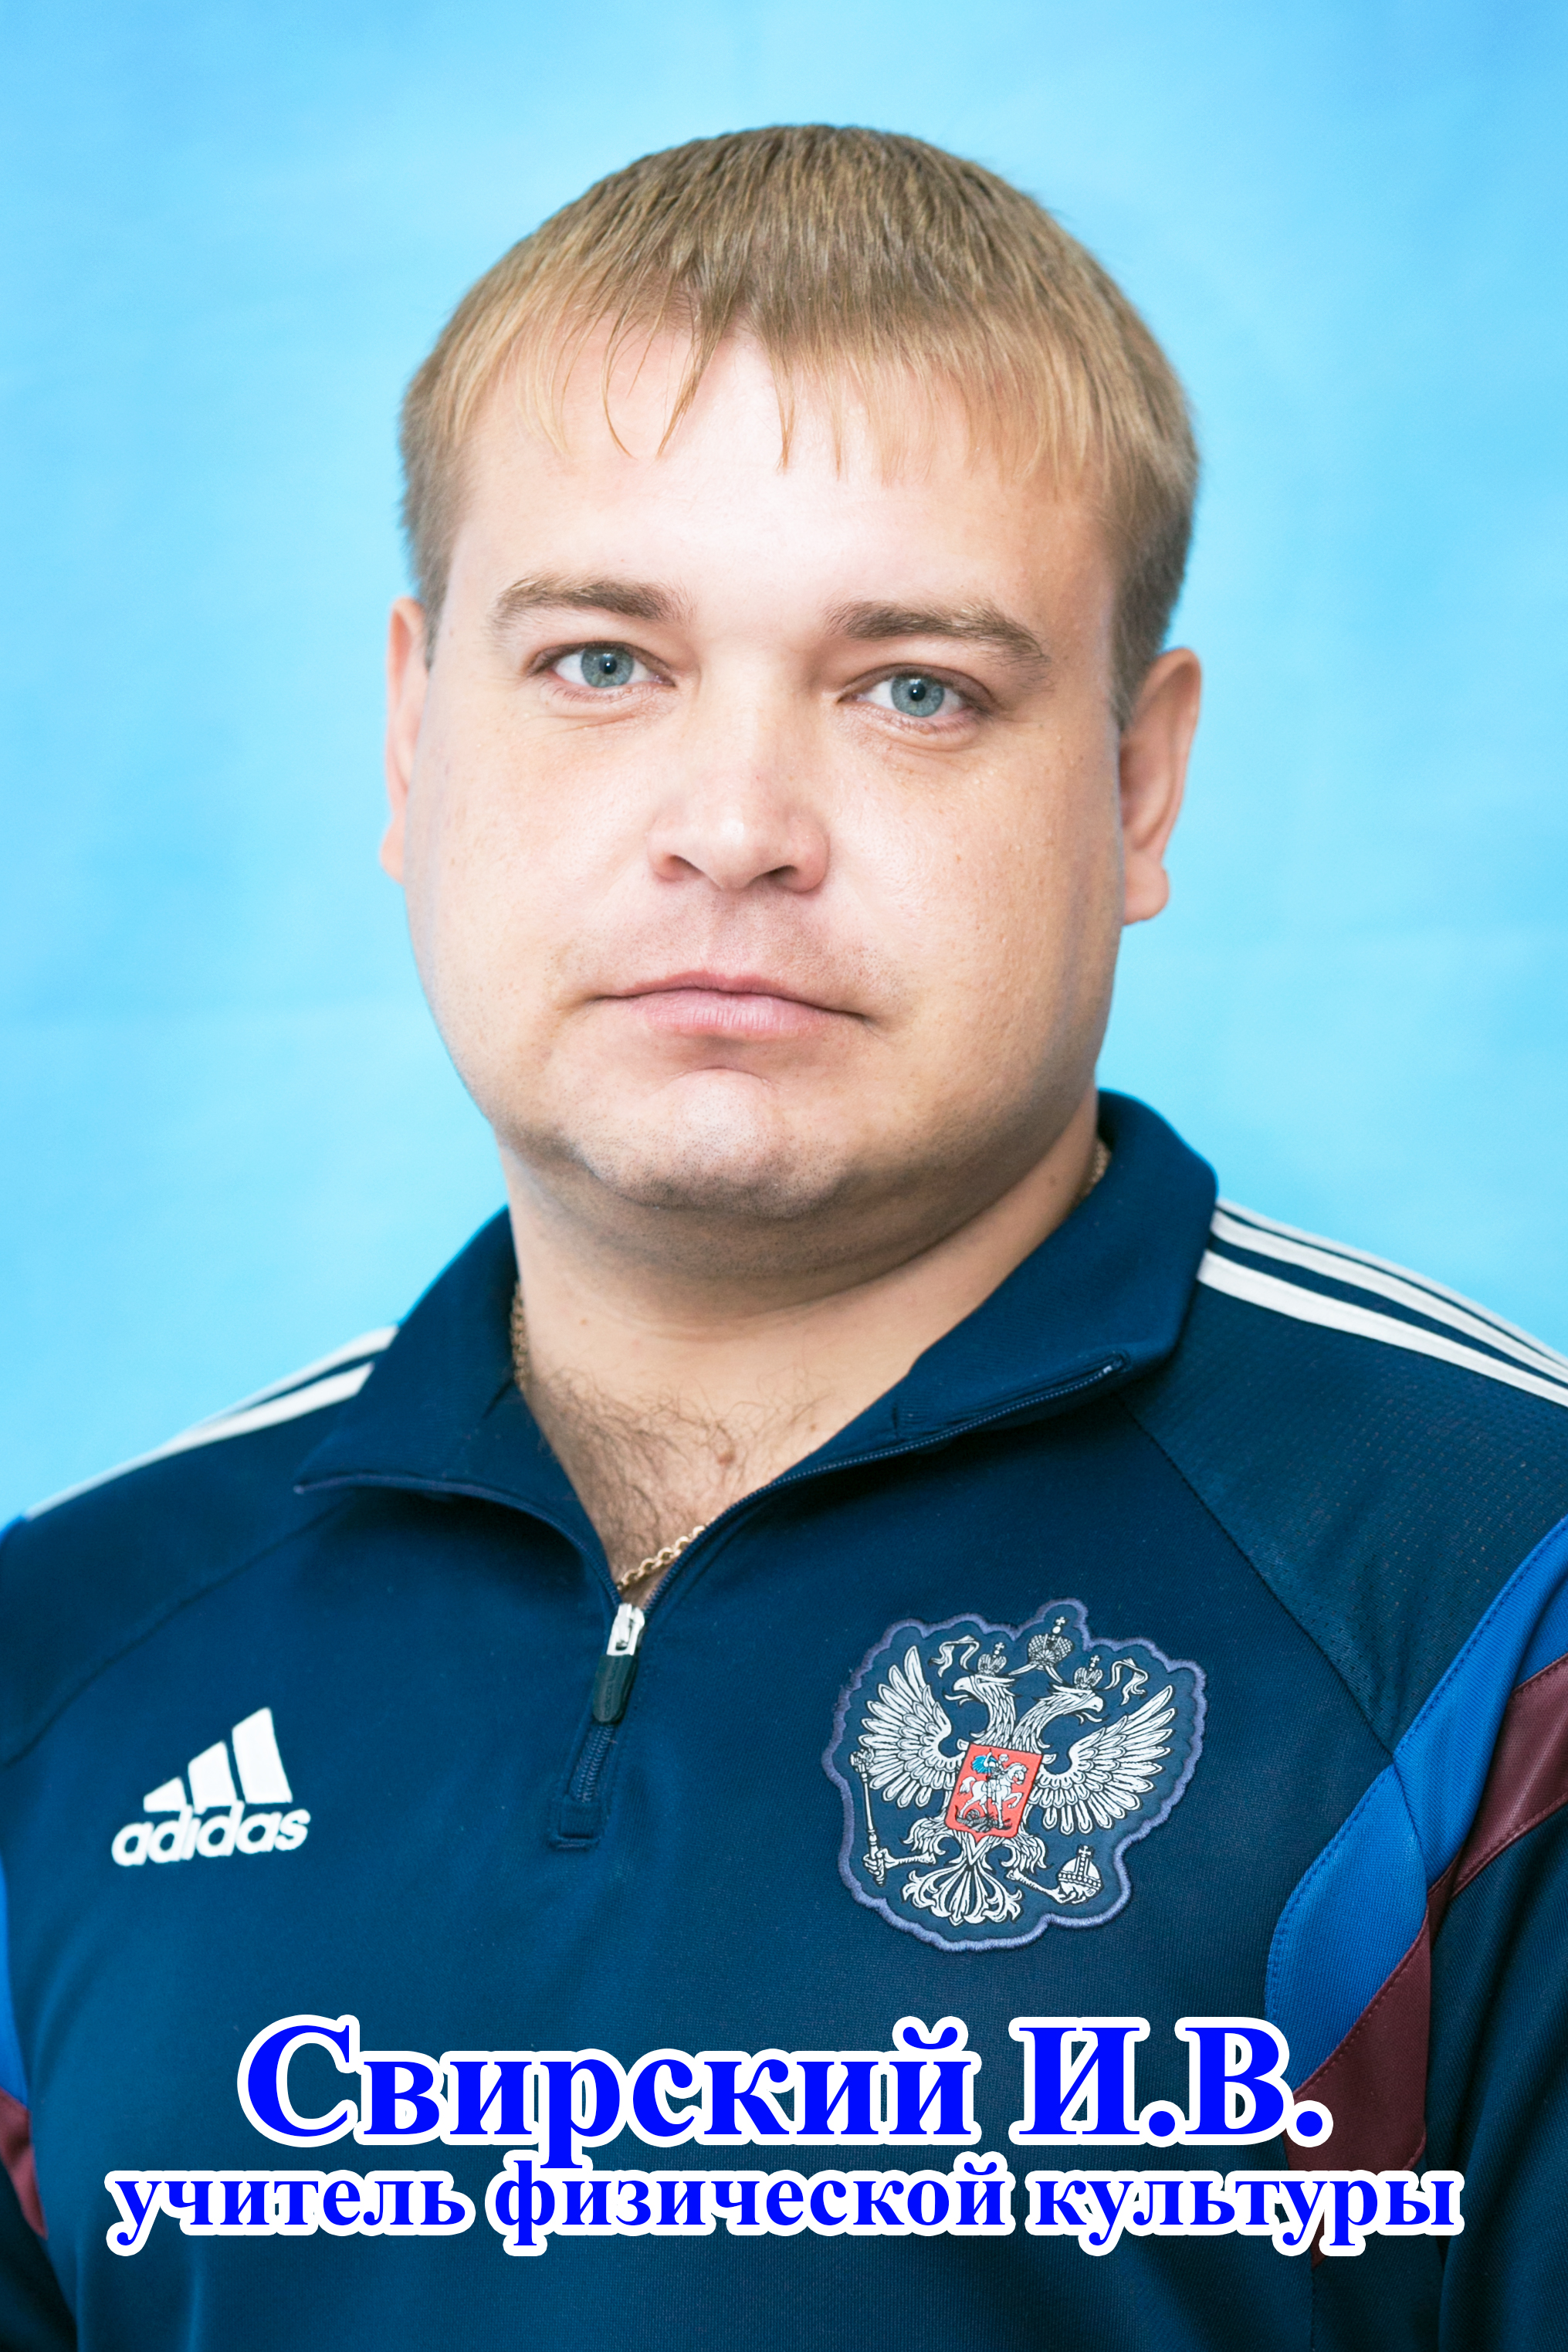 Свирский Илья Викторович.